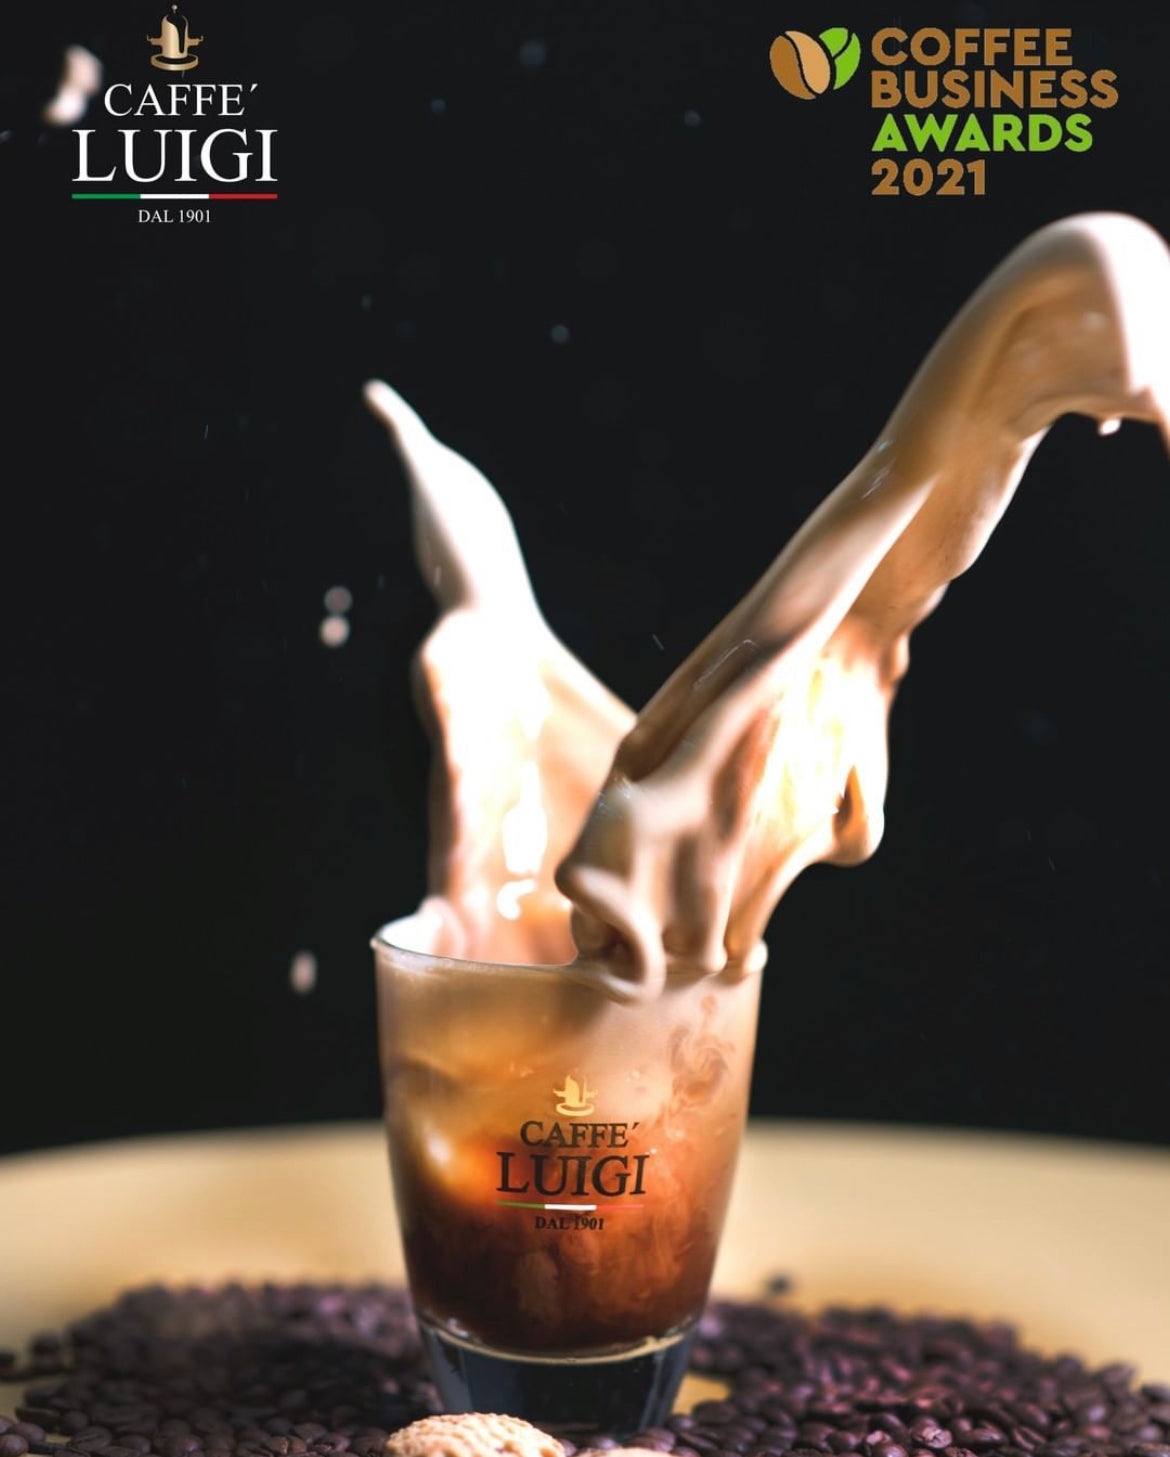 Espresso RICCO Bohnen 1Kg Caffe 'Luigi Ganze Espresso Bohnen Arabica - Robusta + 1 Freddo Cappuccino Glas